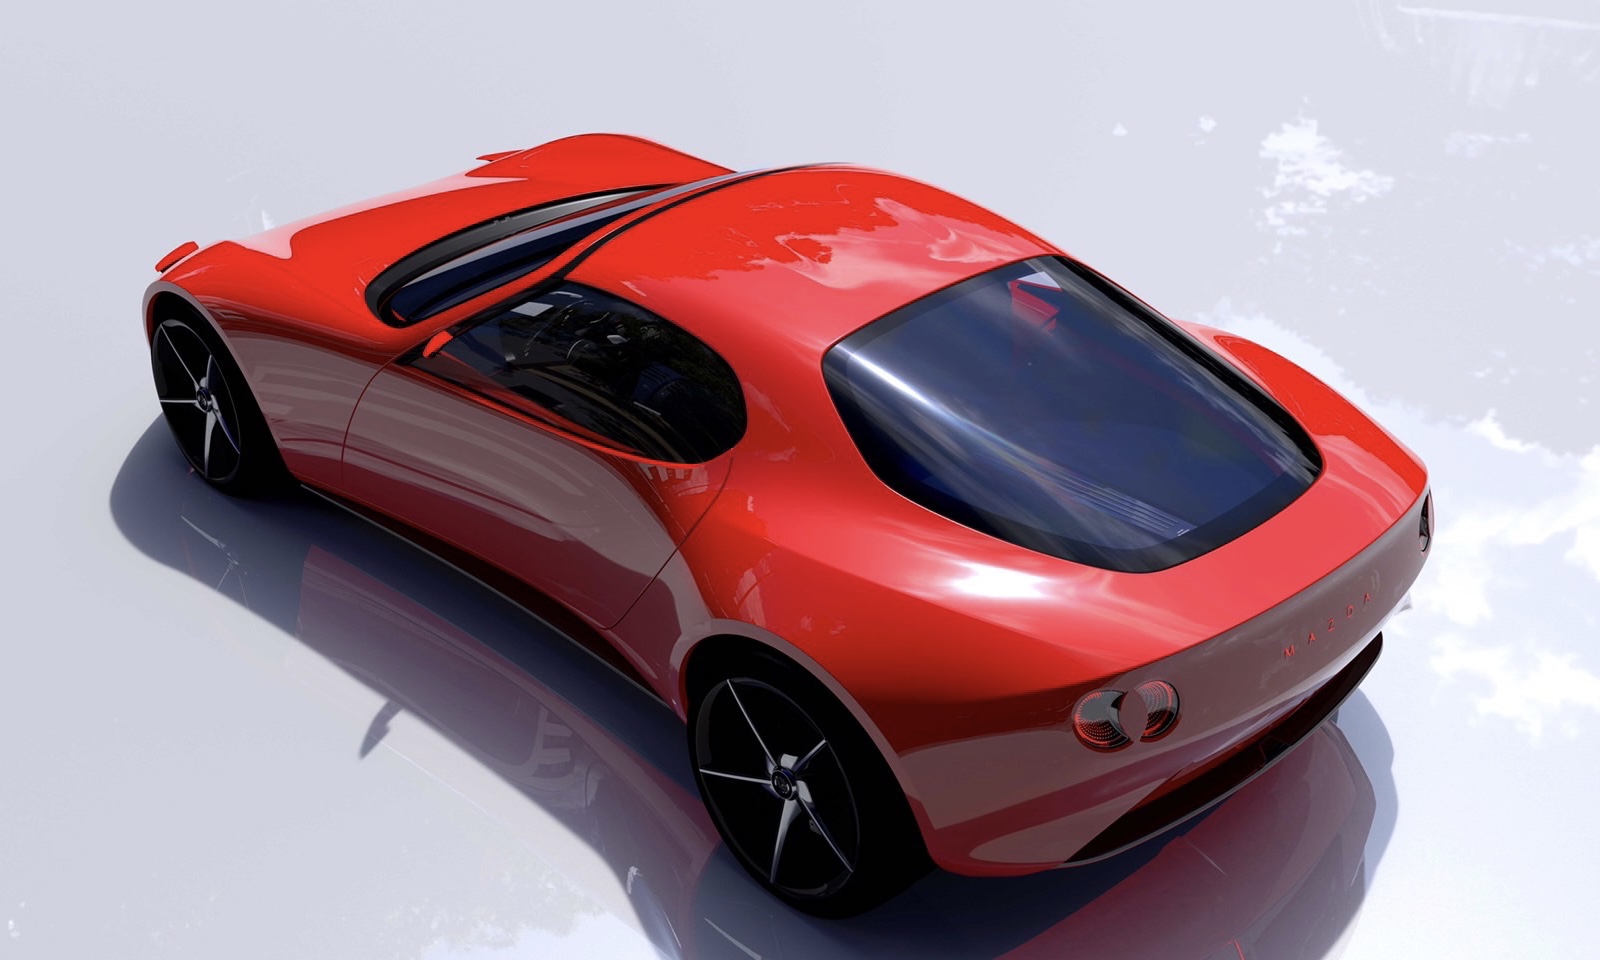 มาสด้า มอเตอร์ คอร์ปอเรชั่น ประเทศญี่ปุ่น เผยโฉมรถต้นแบบ MAZDA ICONIC SP ในงาน Tokyo Mobility Show 2023 ณ กรุงโตเกียว ประเทศญี่ปุ่น